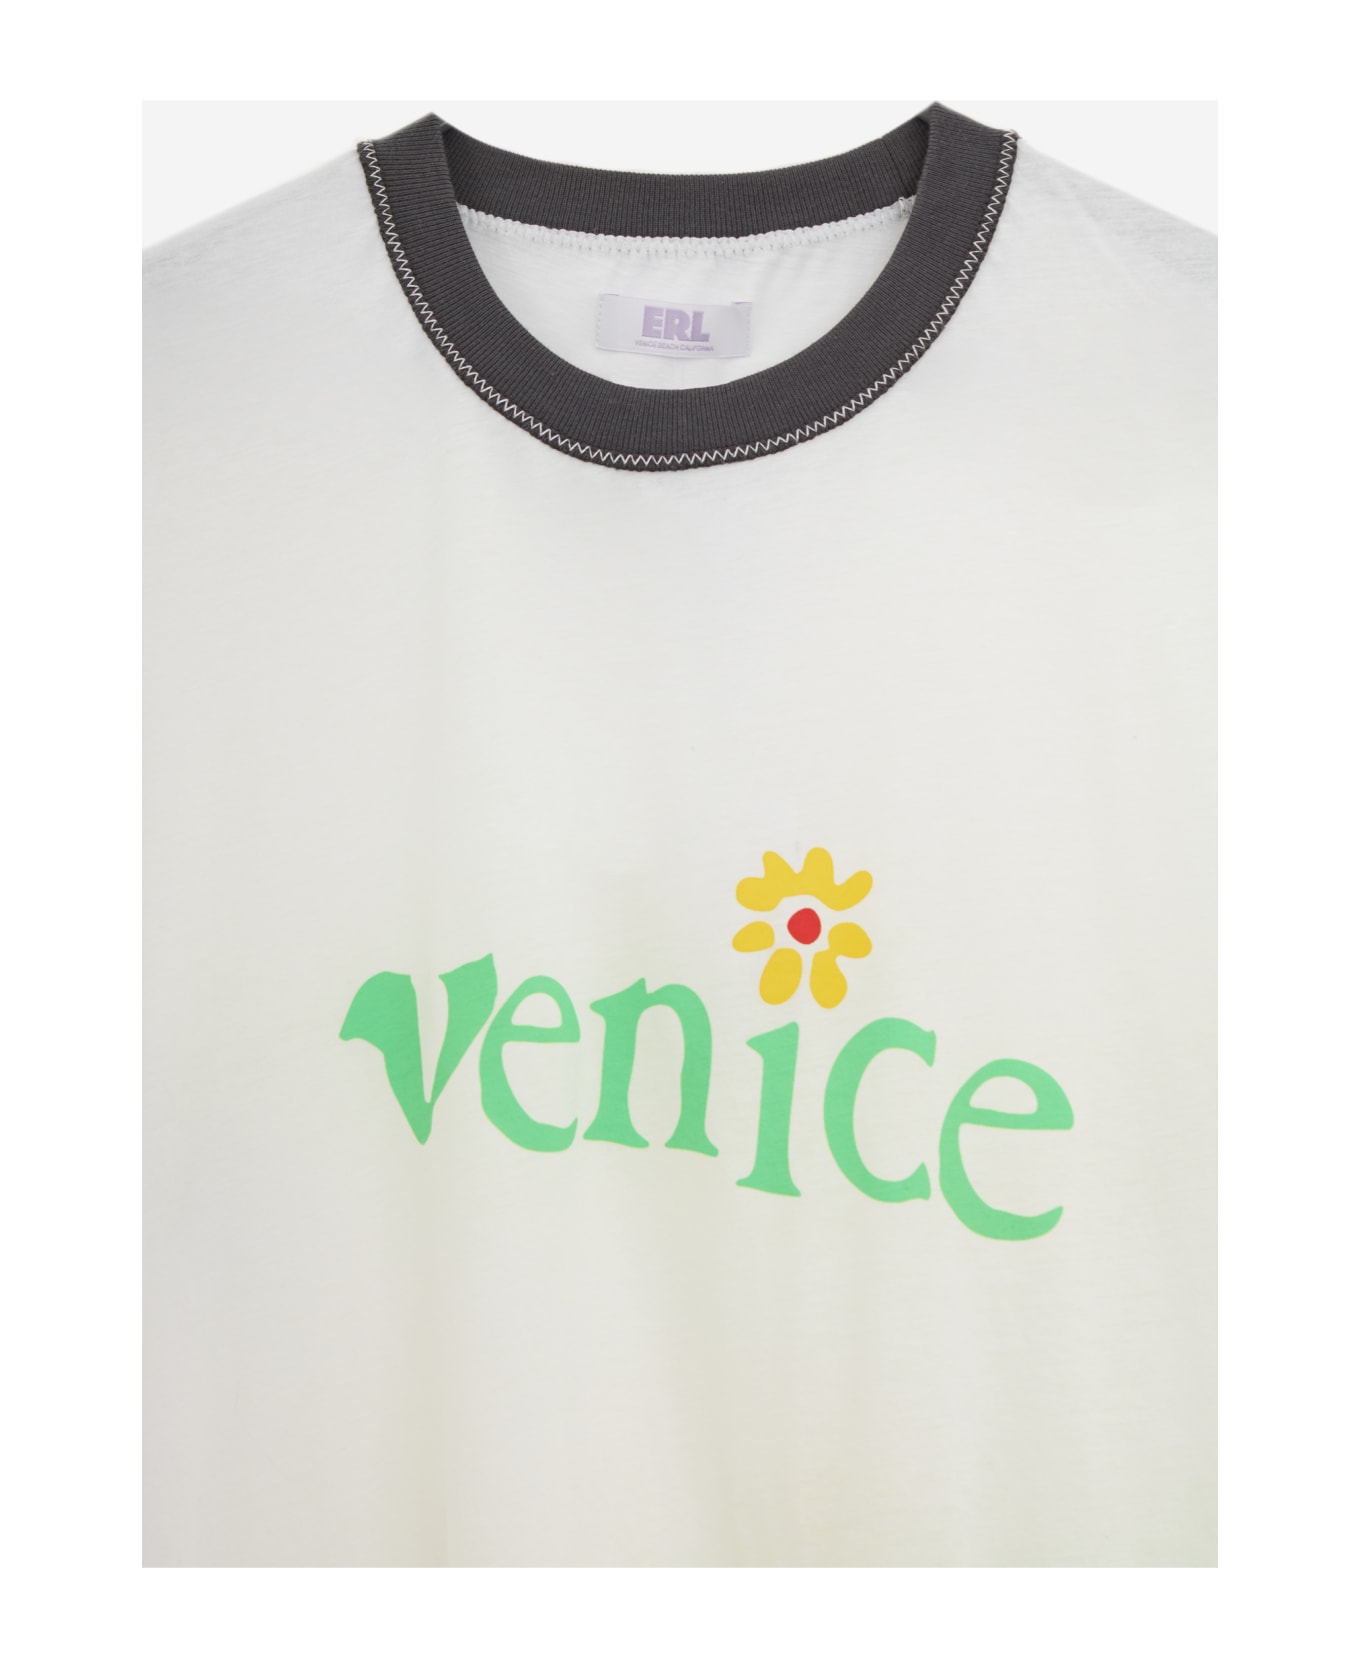 ERL Venice Tshirt T-shirt - white